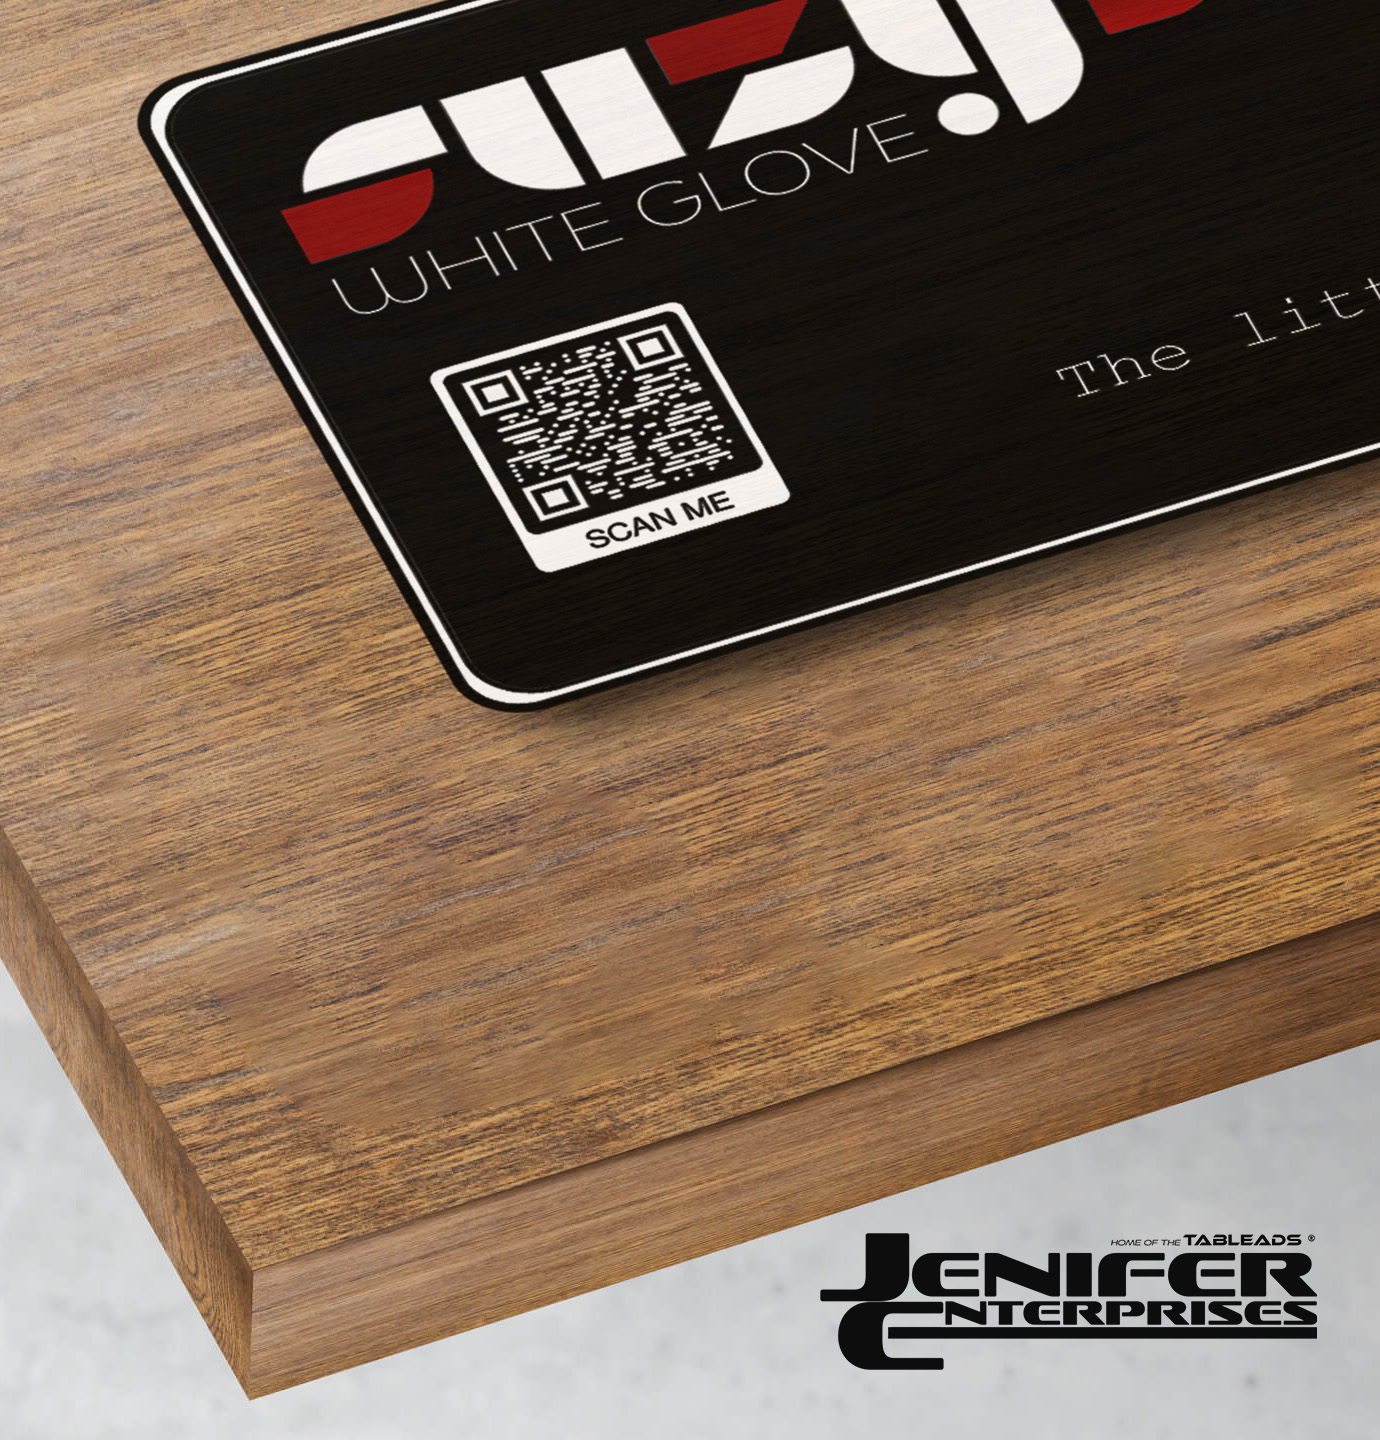 Jenifer Enterprises - TableAds - advertise on tables in restaurants